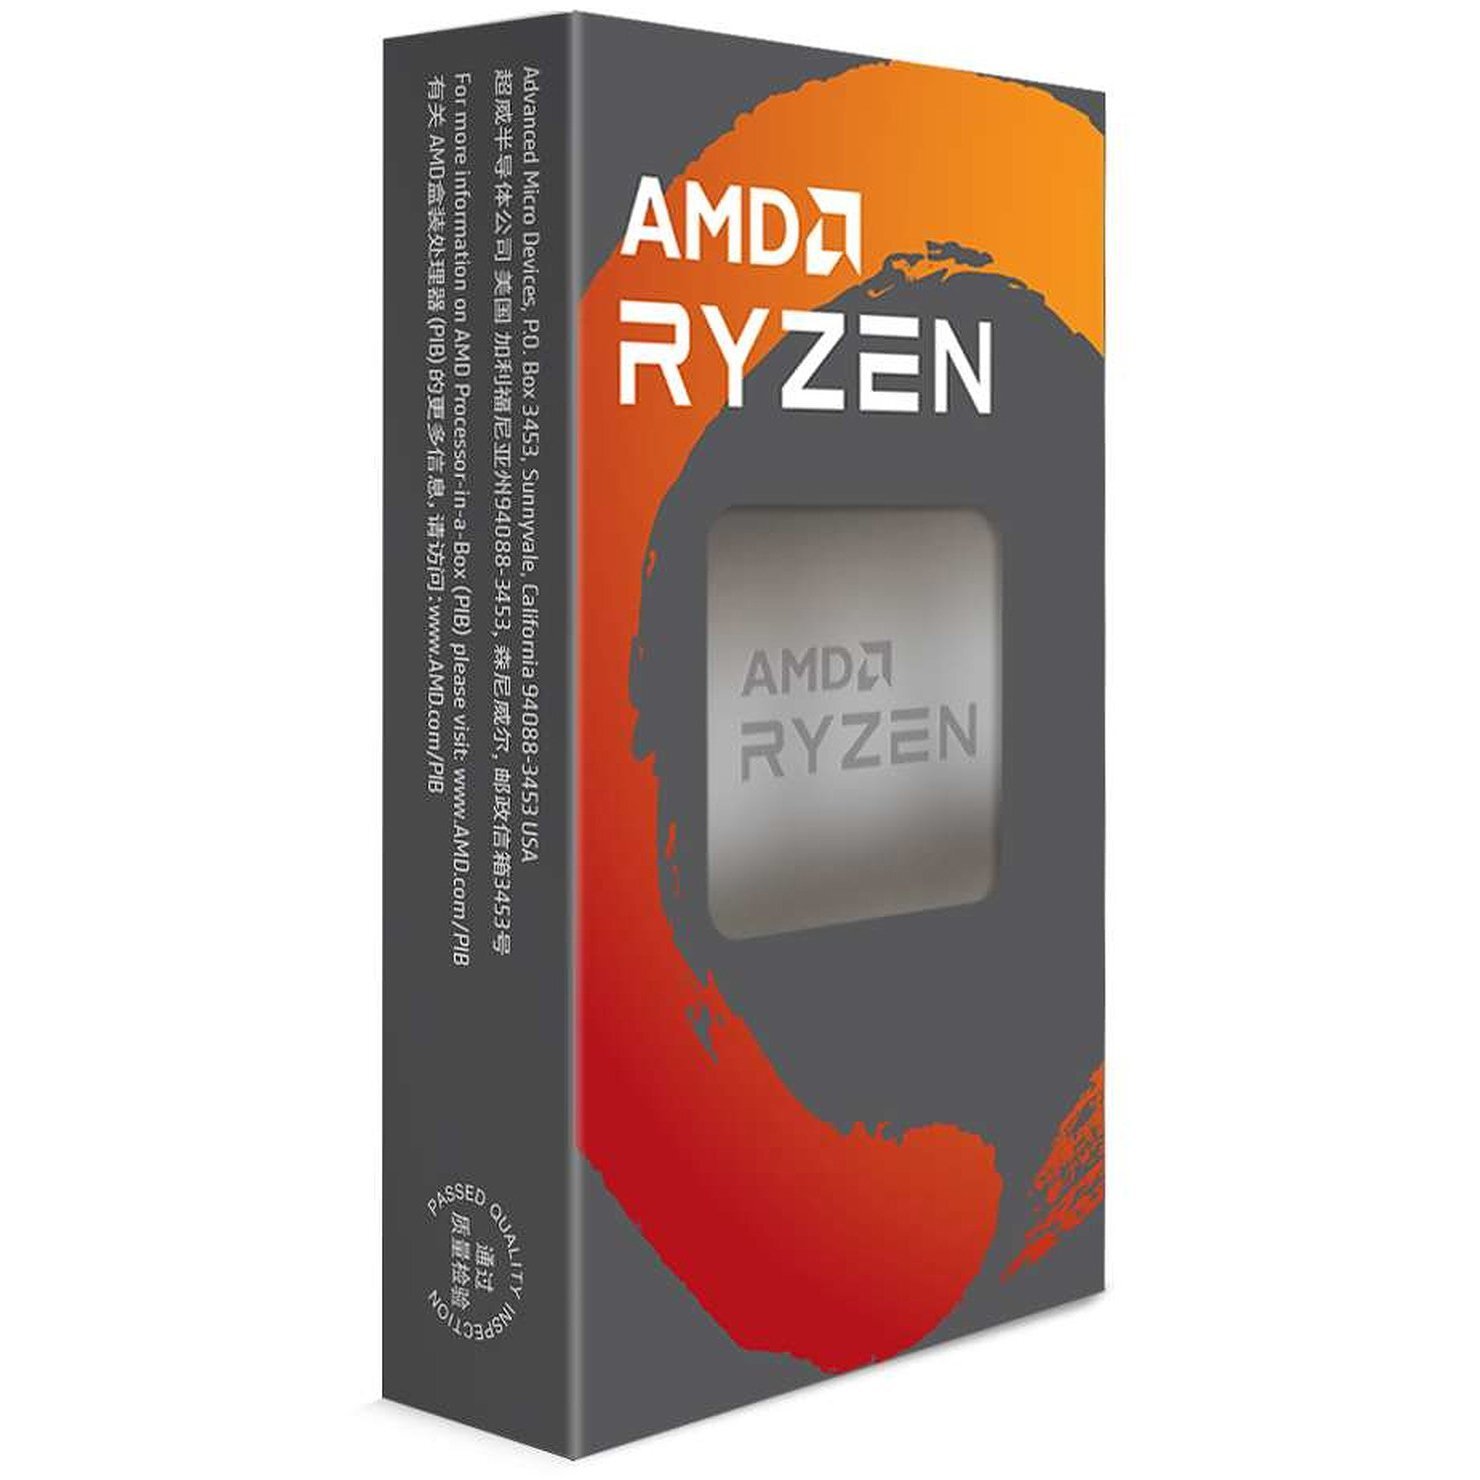 Процесор AMD Ryzen 5 3600 6C/12T 3.6/4.2GHz Boost 32Mb AM4 65W cooler Box (100-100000031AWOF)фото